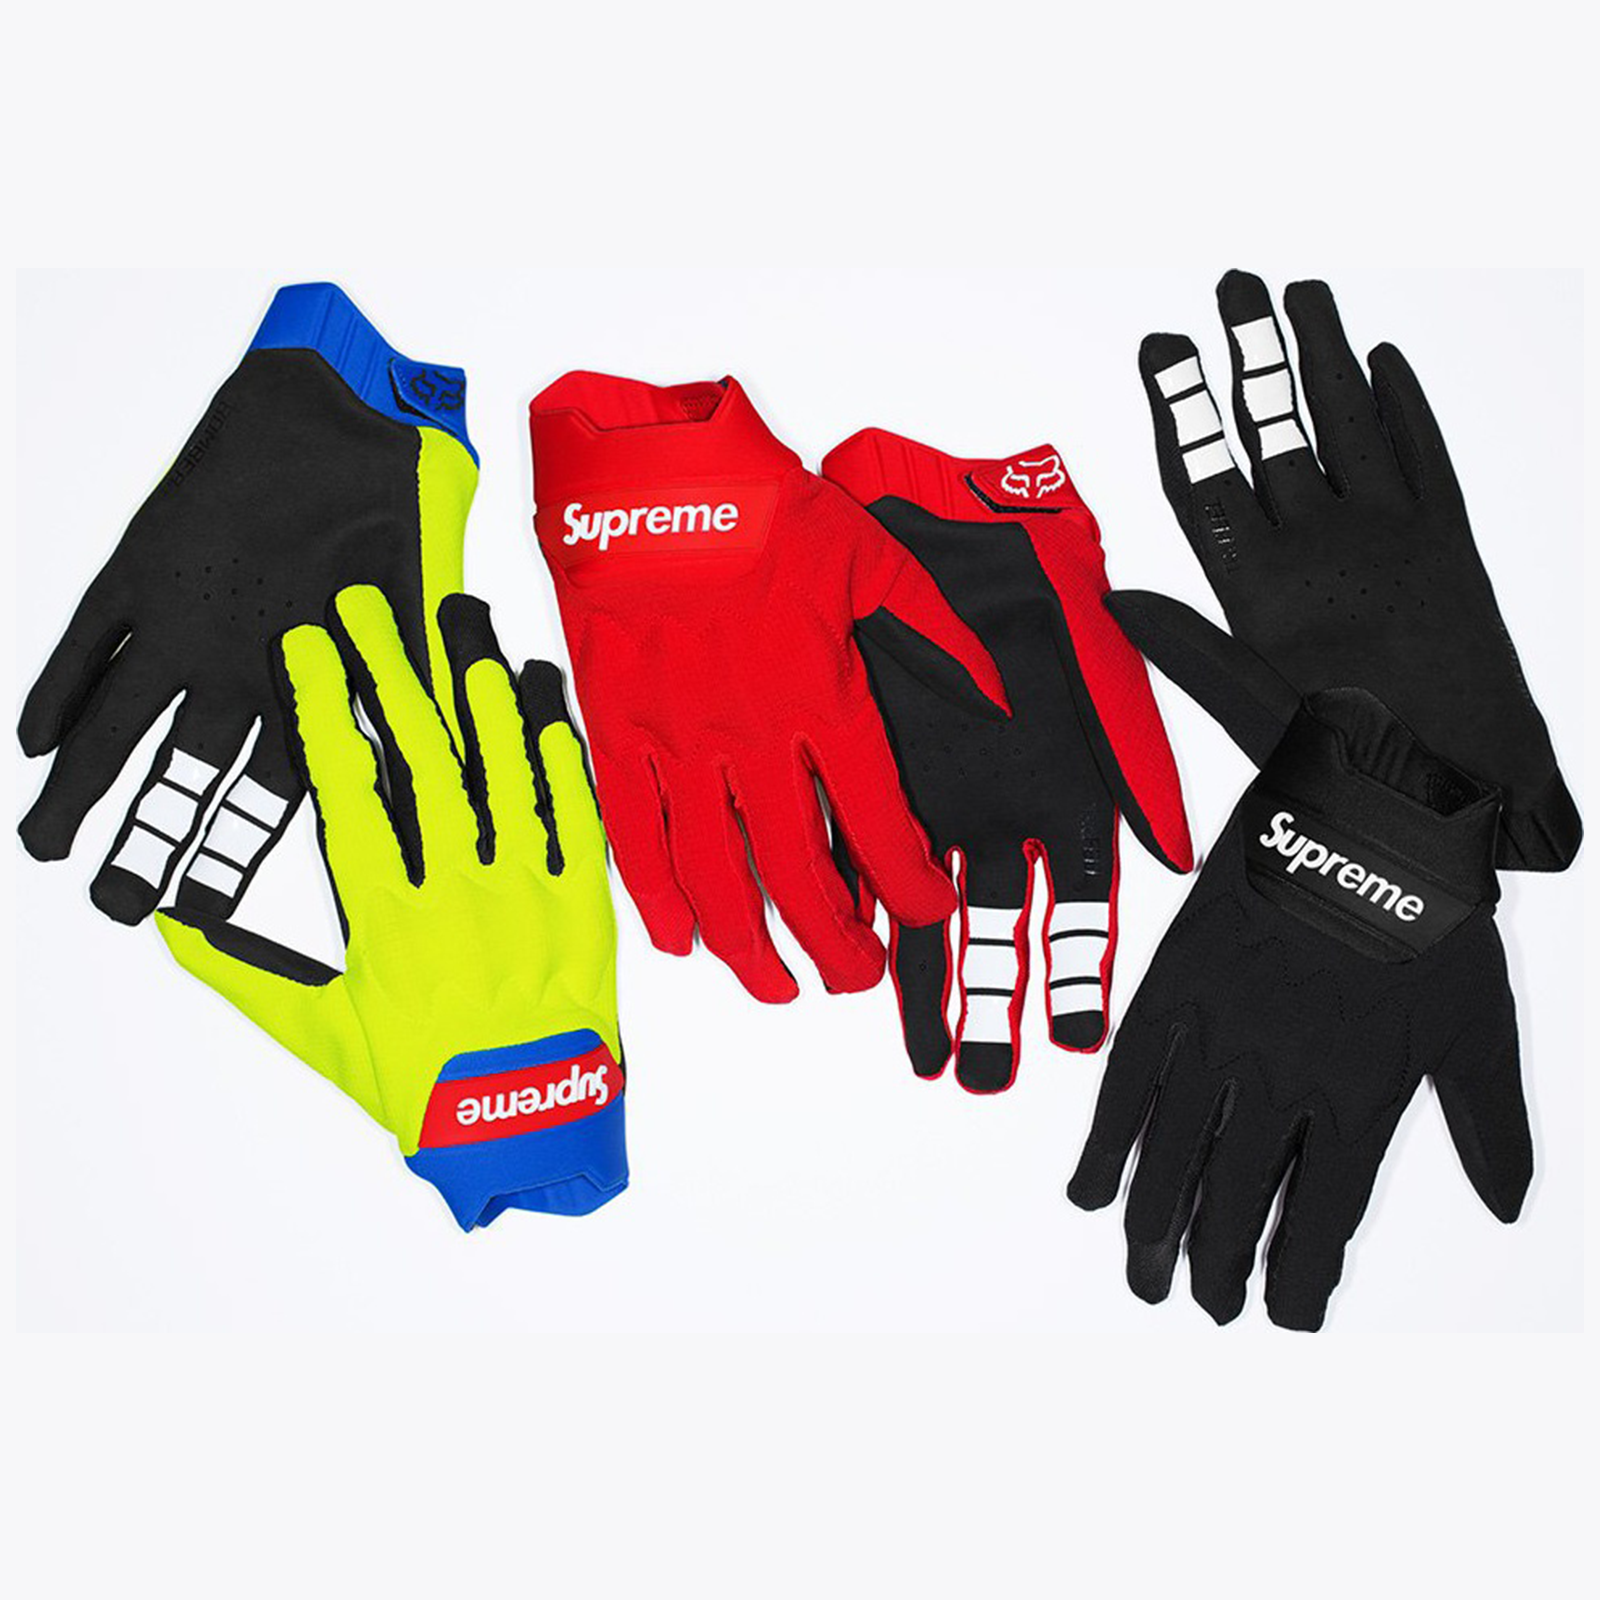 Supreme Fox Racing Bomber LT Gloves SS 18 - Stadium Goods